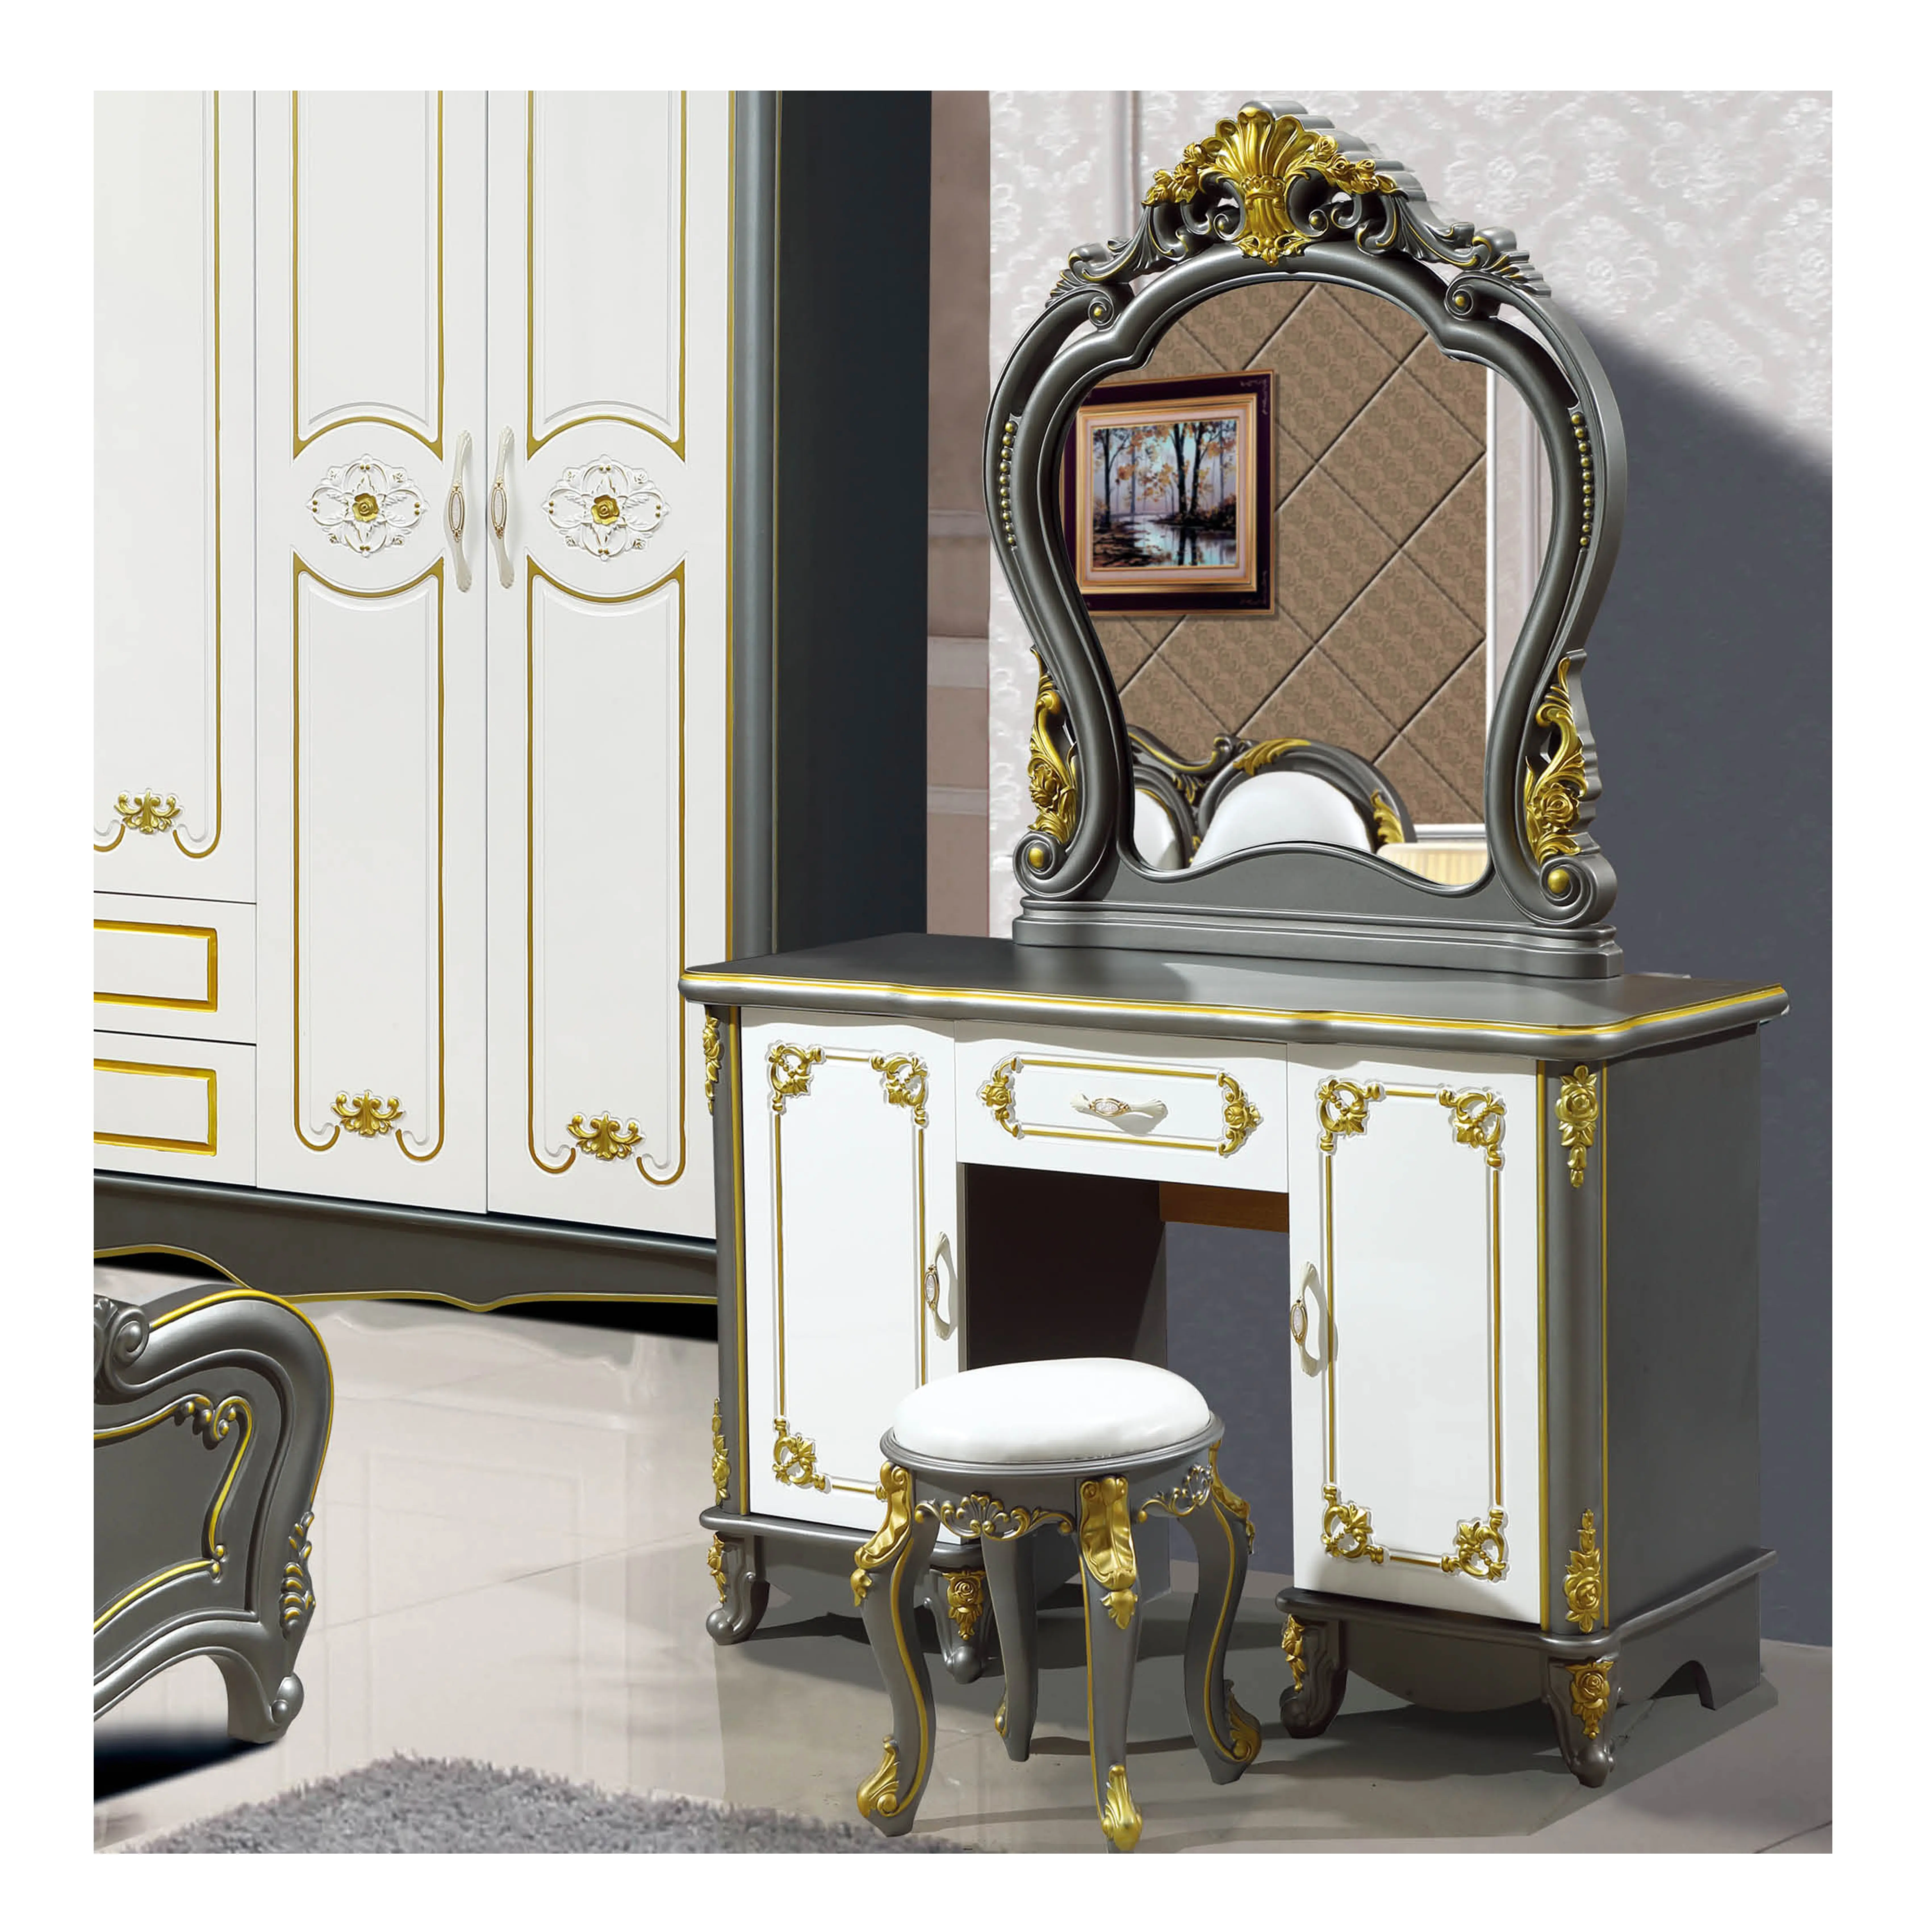 Lusso stile europeo toletta specchio camera da letto mobili con arredamento oro Premium mobili comò modulare